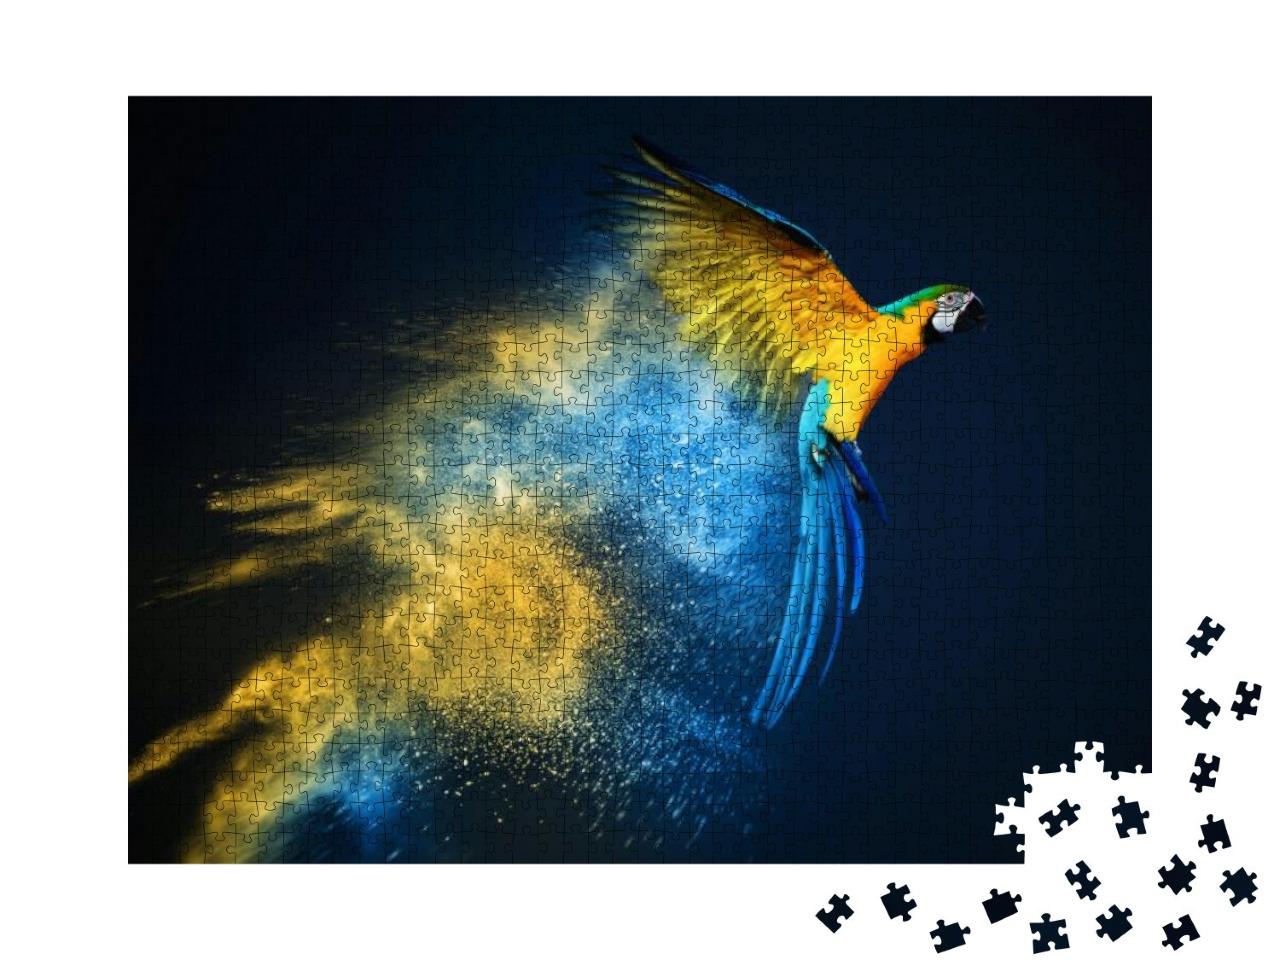 Puzzle 1000 Teile „Fliegender Ara-Papagei über bunter Pulverexplosion“